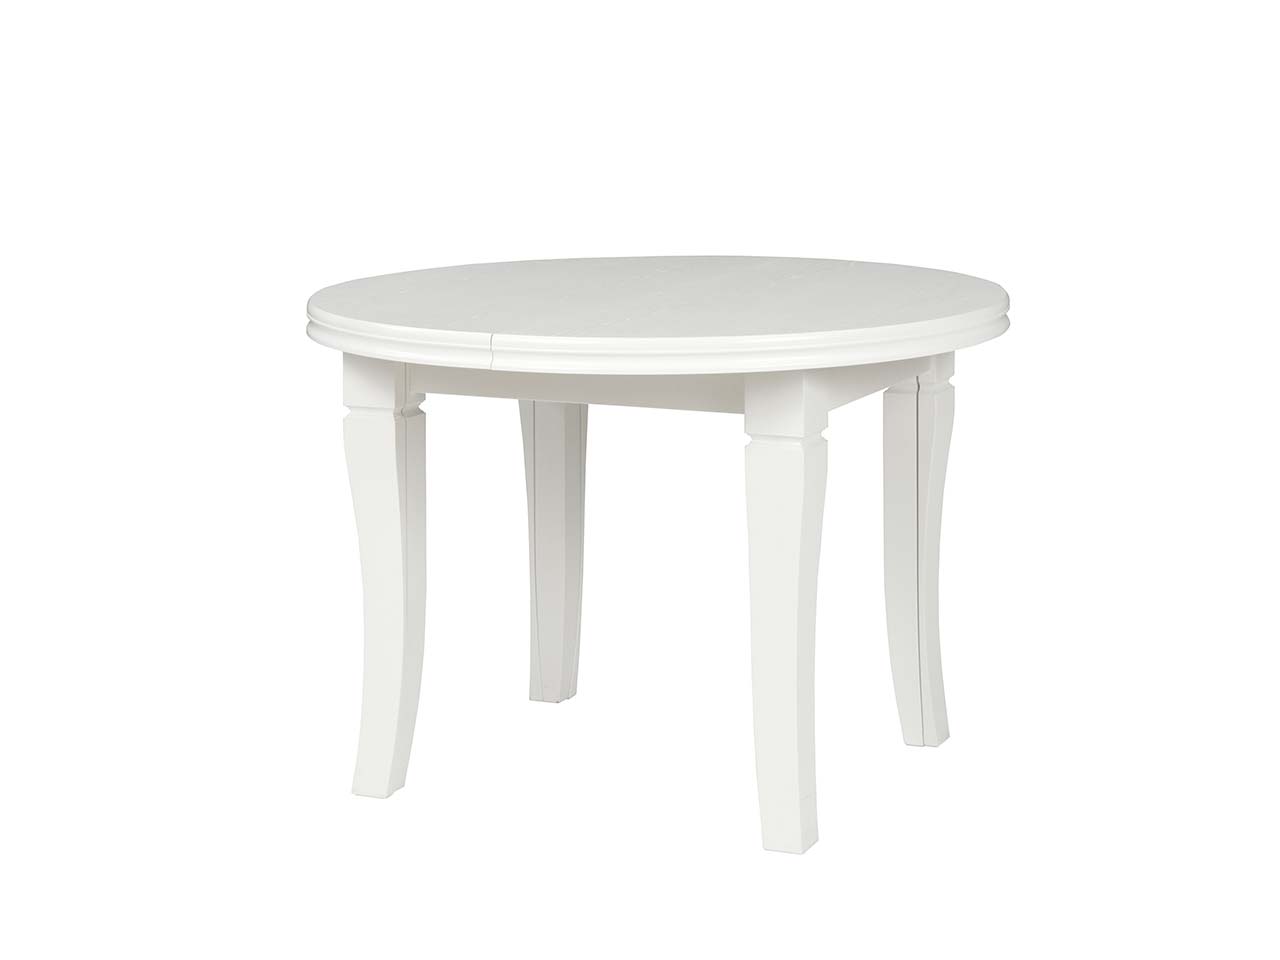 Jídelní stůl Lux, dřevěná dýha/masiv, průměr 110 cm, až 260 cm (po rozložení)